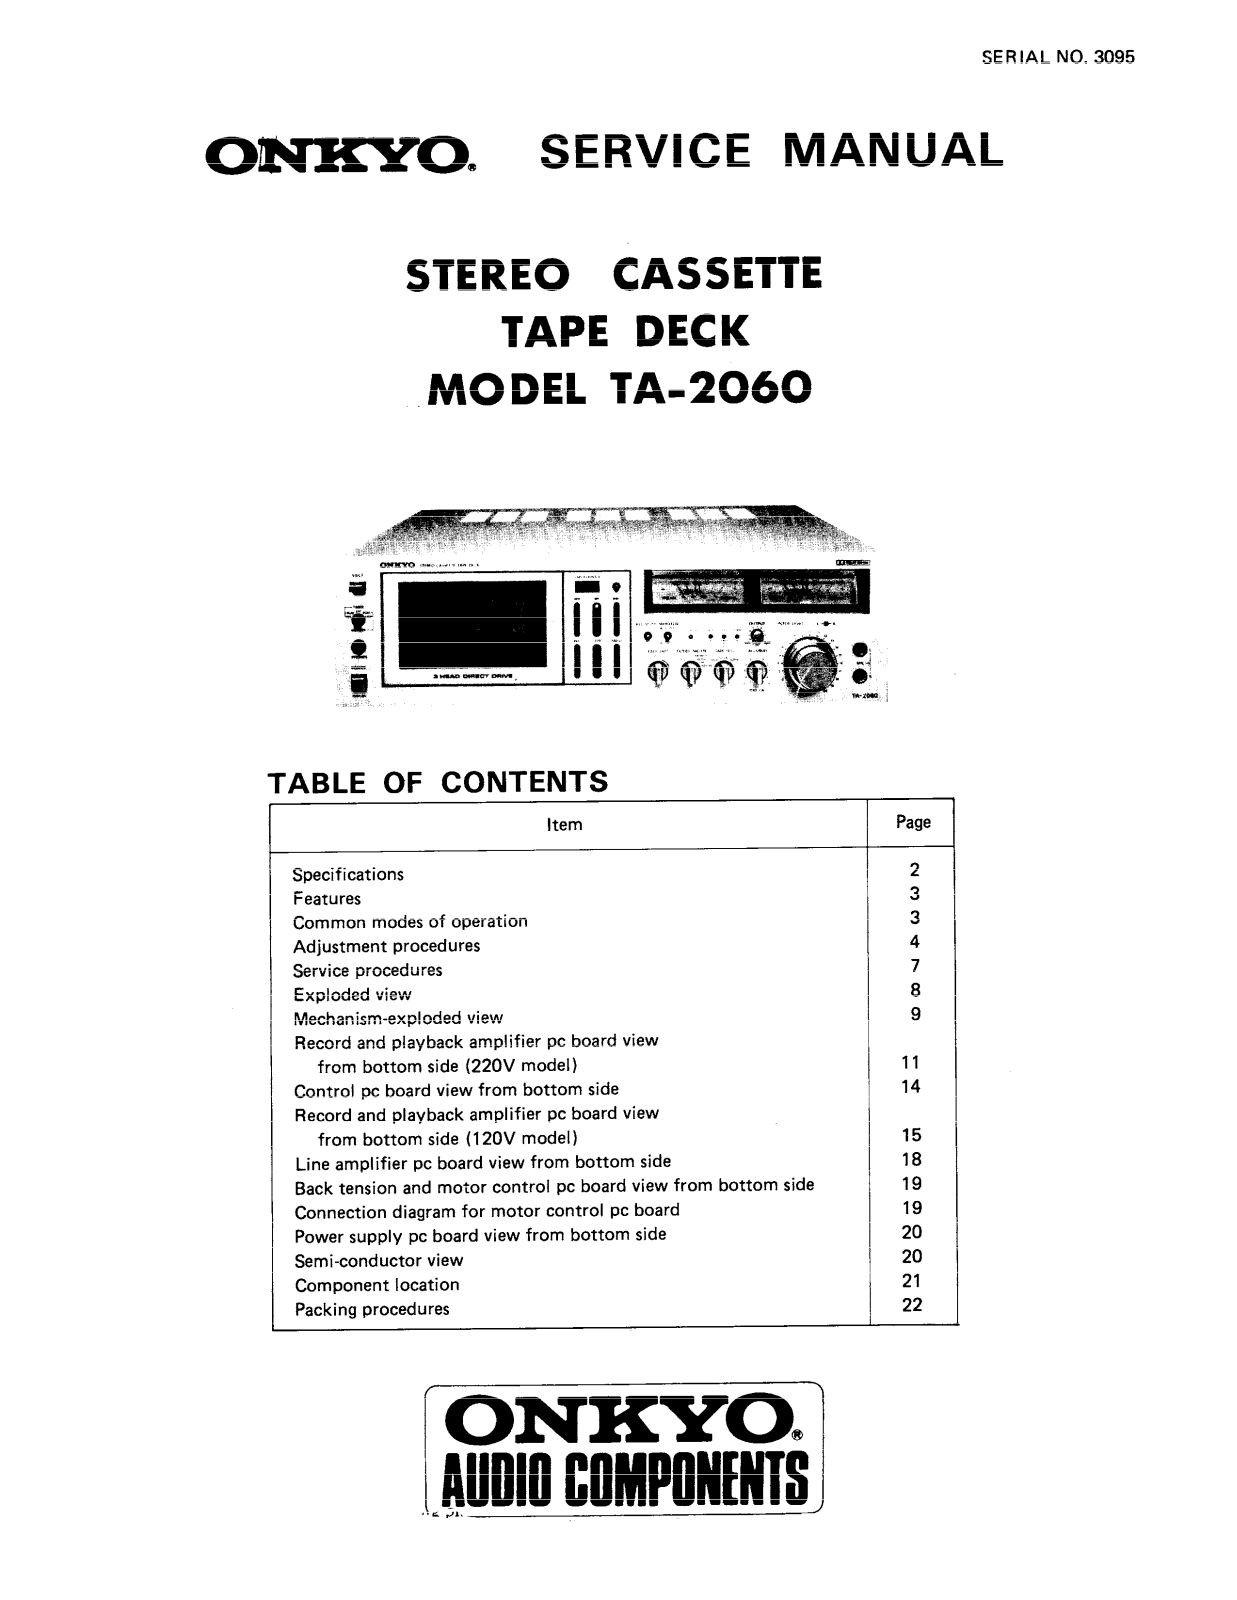 Onkyo TA-2060 Service manual